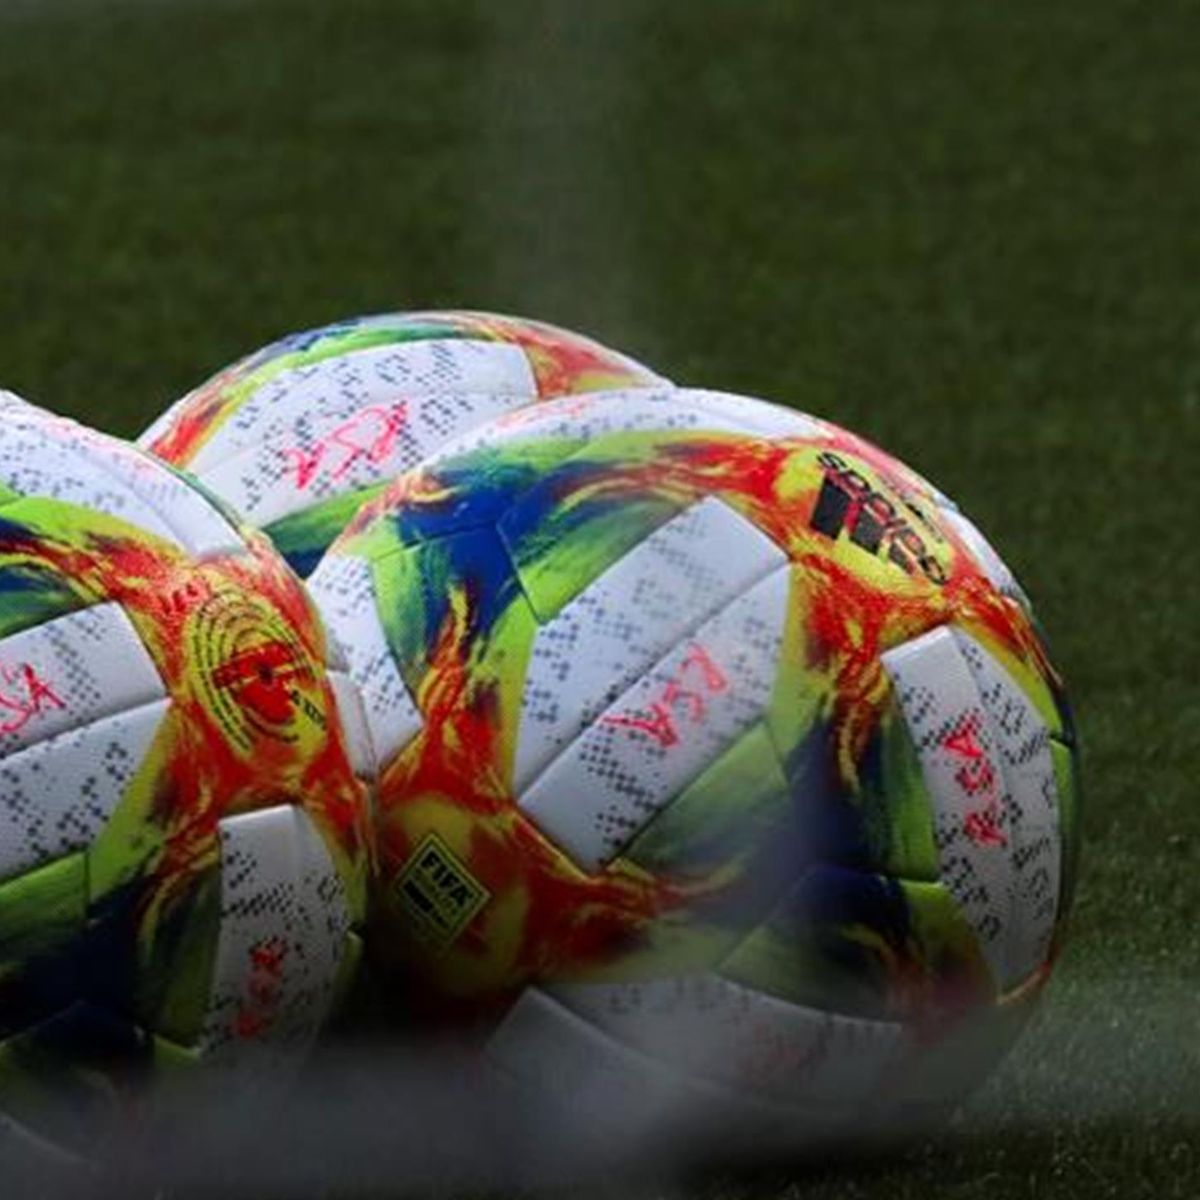 19 de Adidas será el balón utilizado en la fase eliminatoria Eurosport